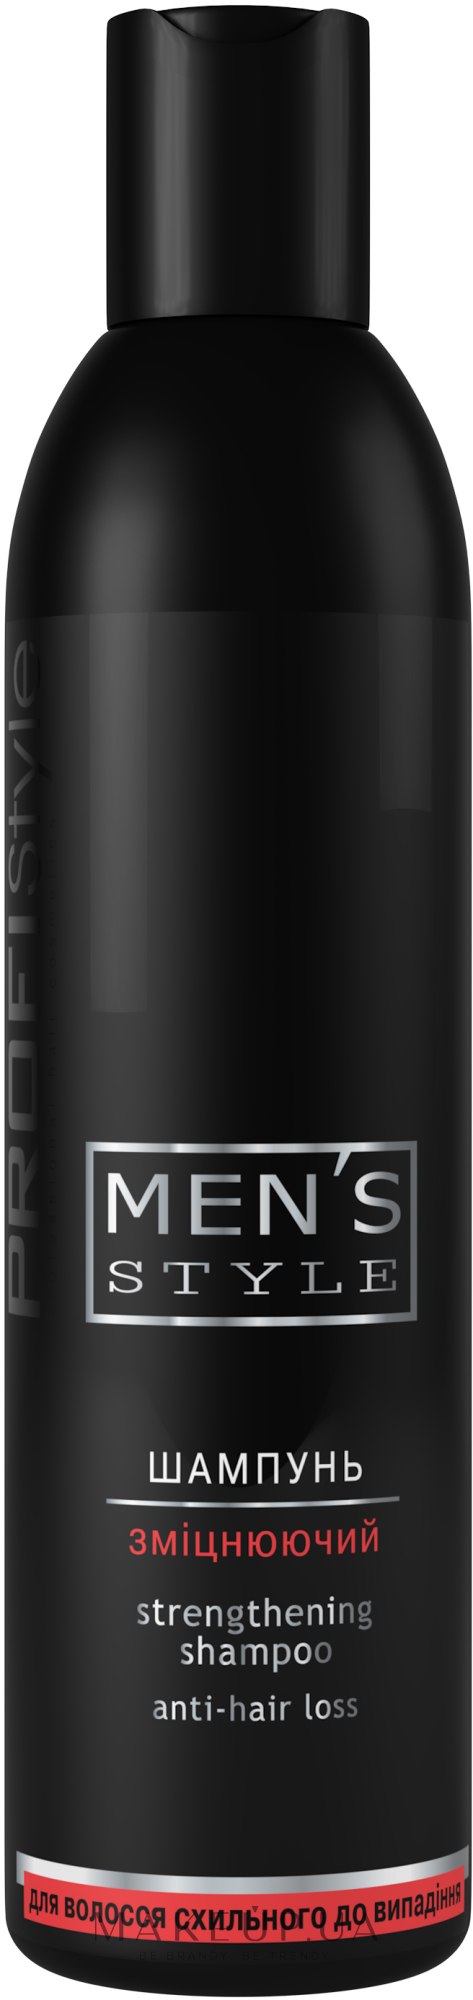 Шампунь зміцнювальний, для чоловіків - Profi Style Men's Style Strengthening Shampoo — фото 250ml